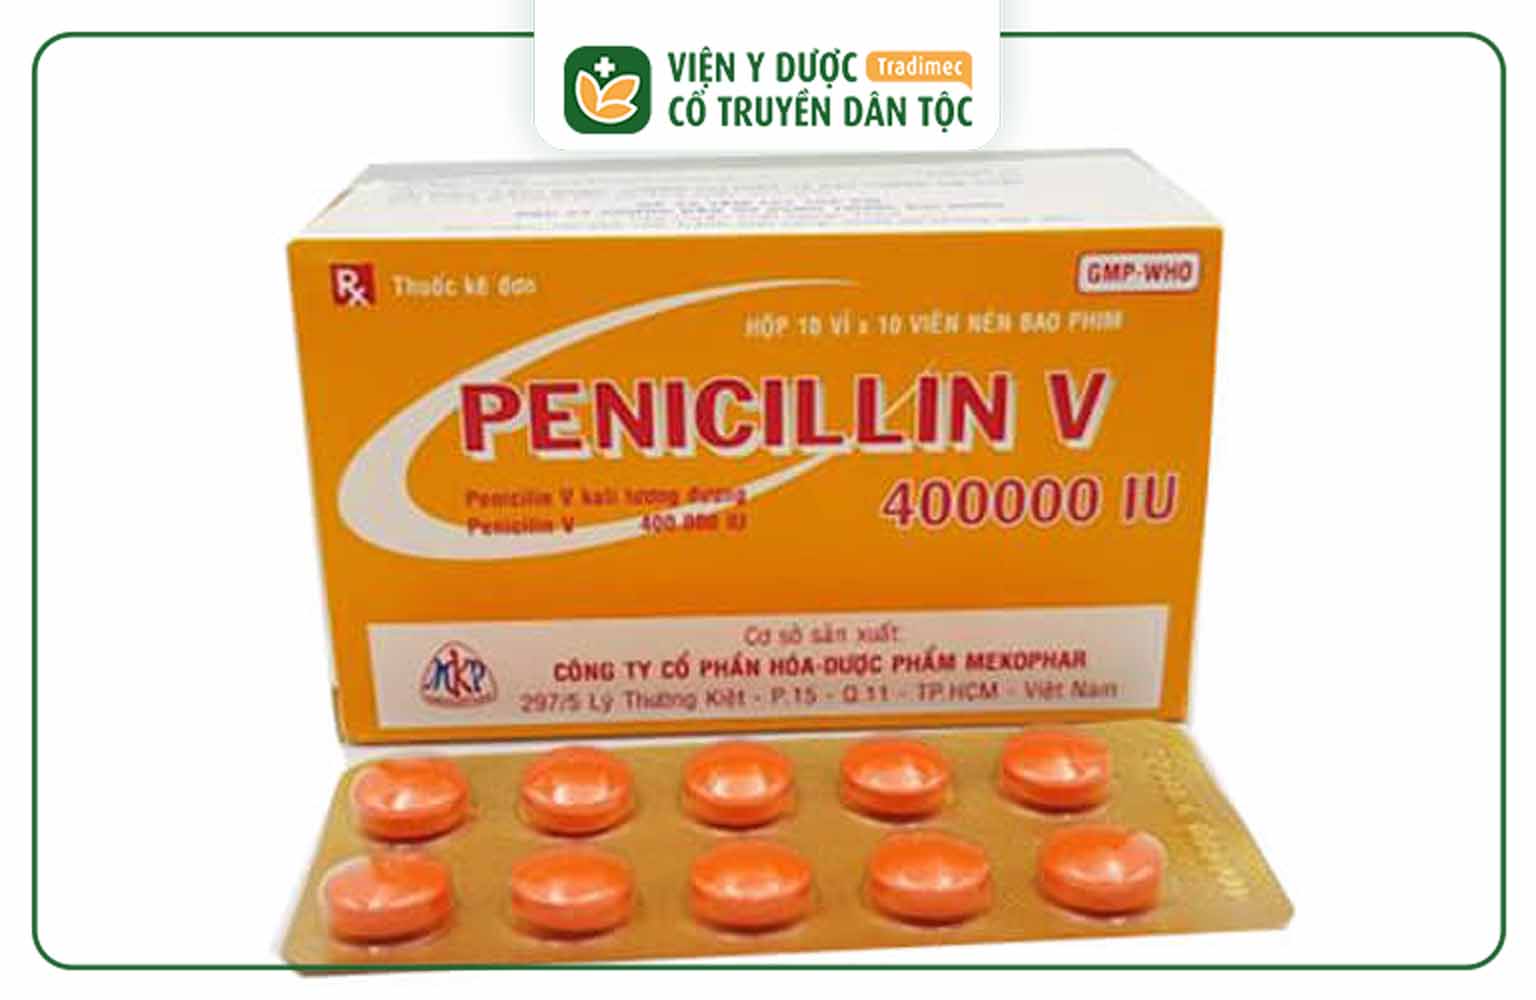 Pelicillin V là một loại kháng sinh thuộc nhóm penicillin